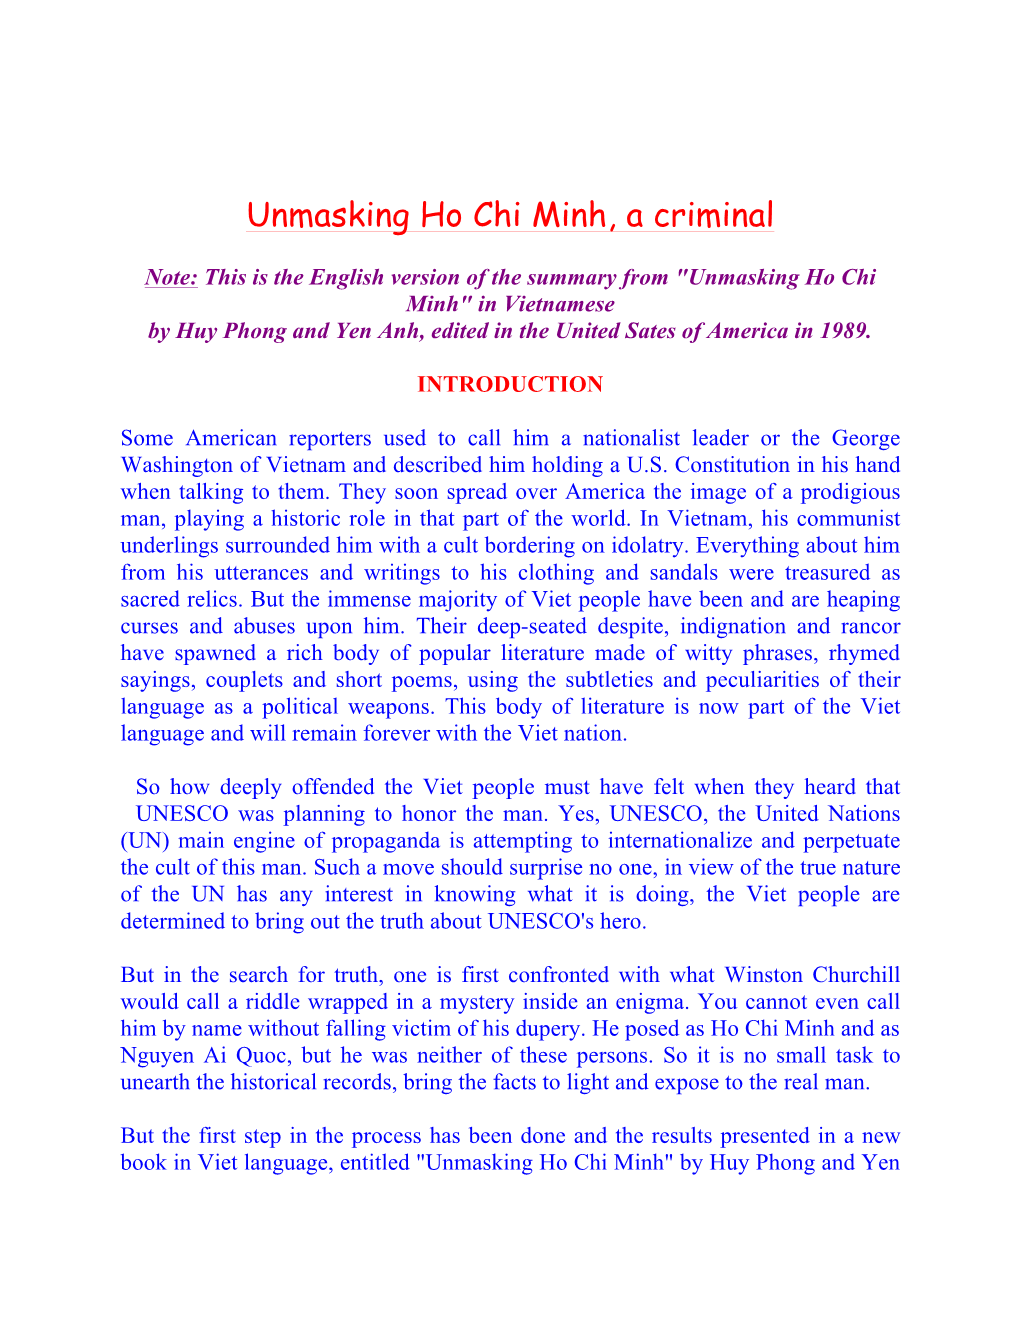 Unmasking Ho Chi Minh, a Criminal